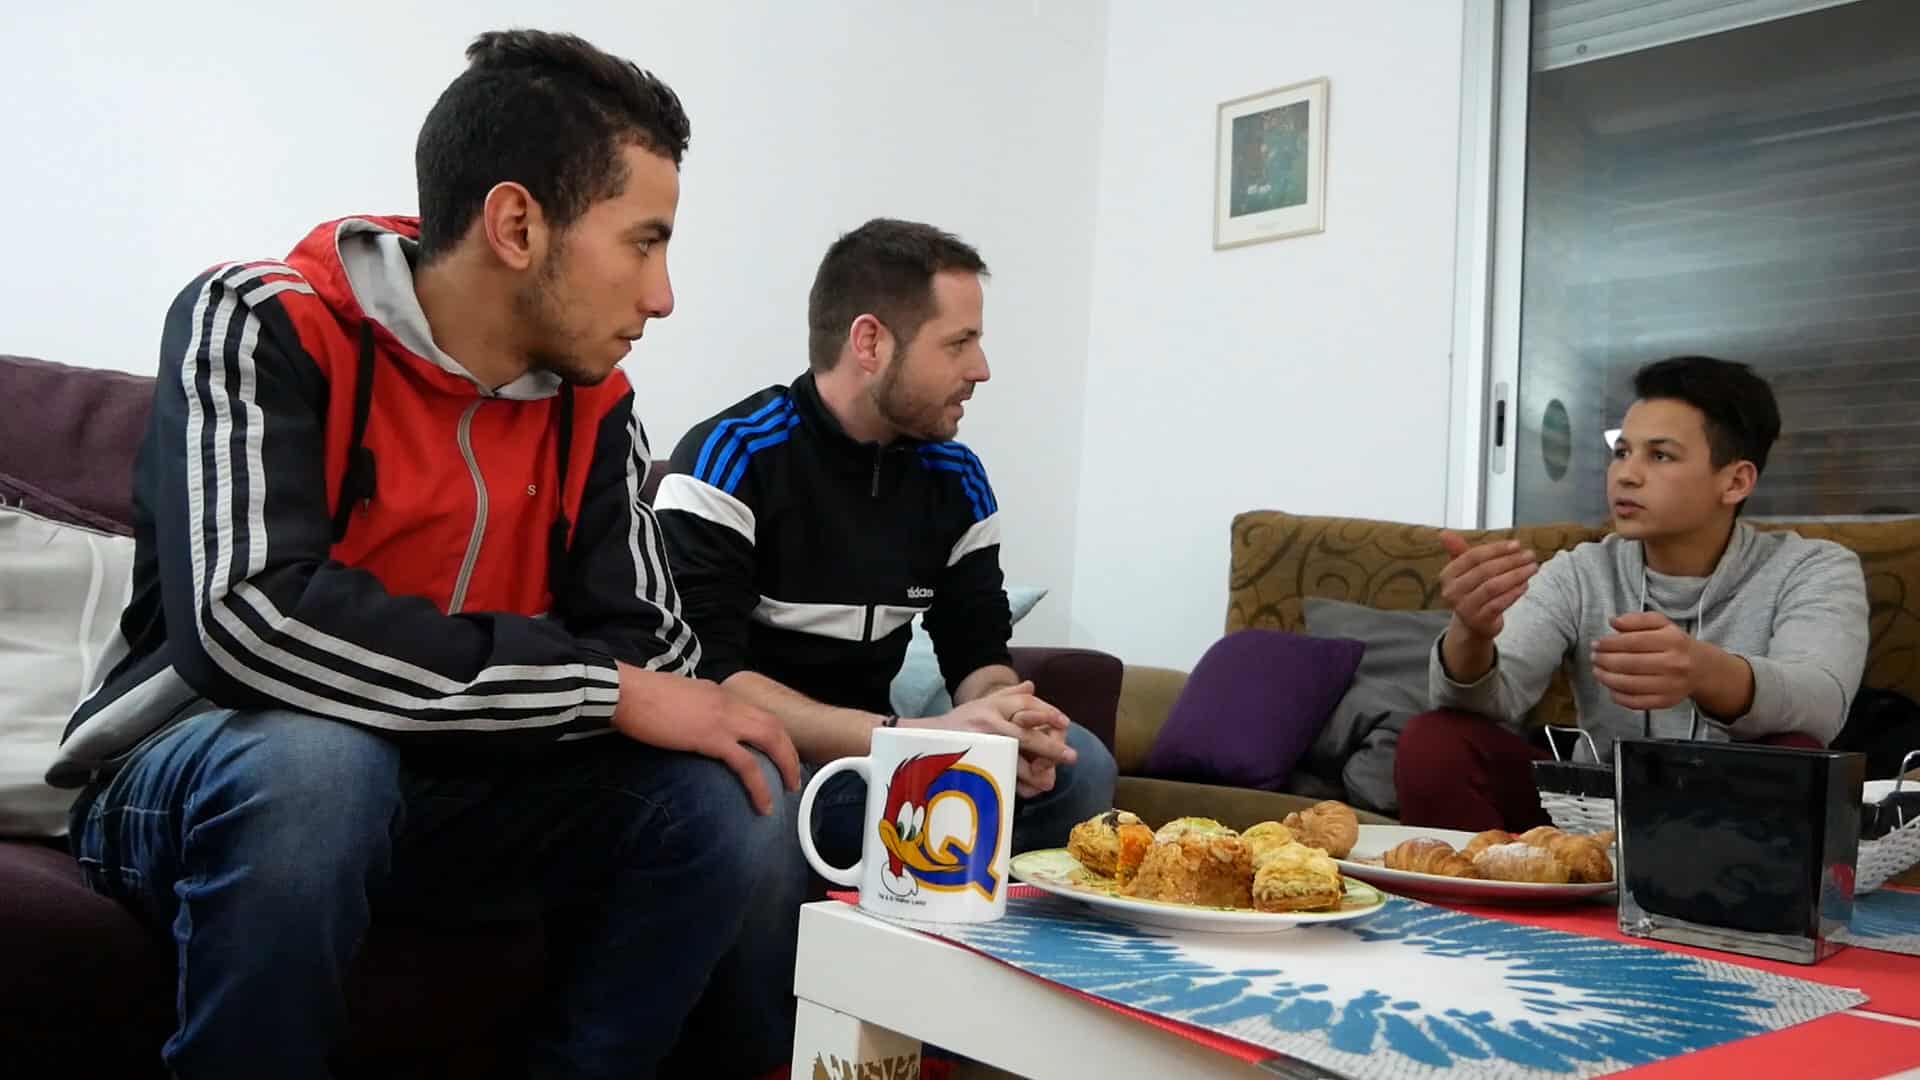 Tres nois asseguts en un sofà. Davant una taula amb pastes dolces i una tassa.